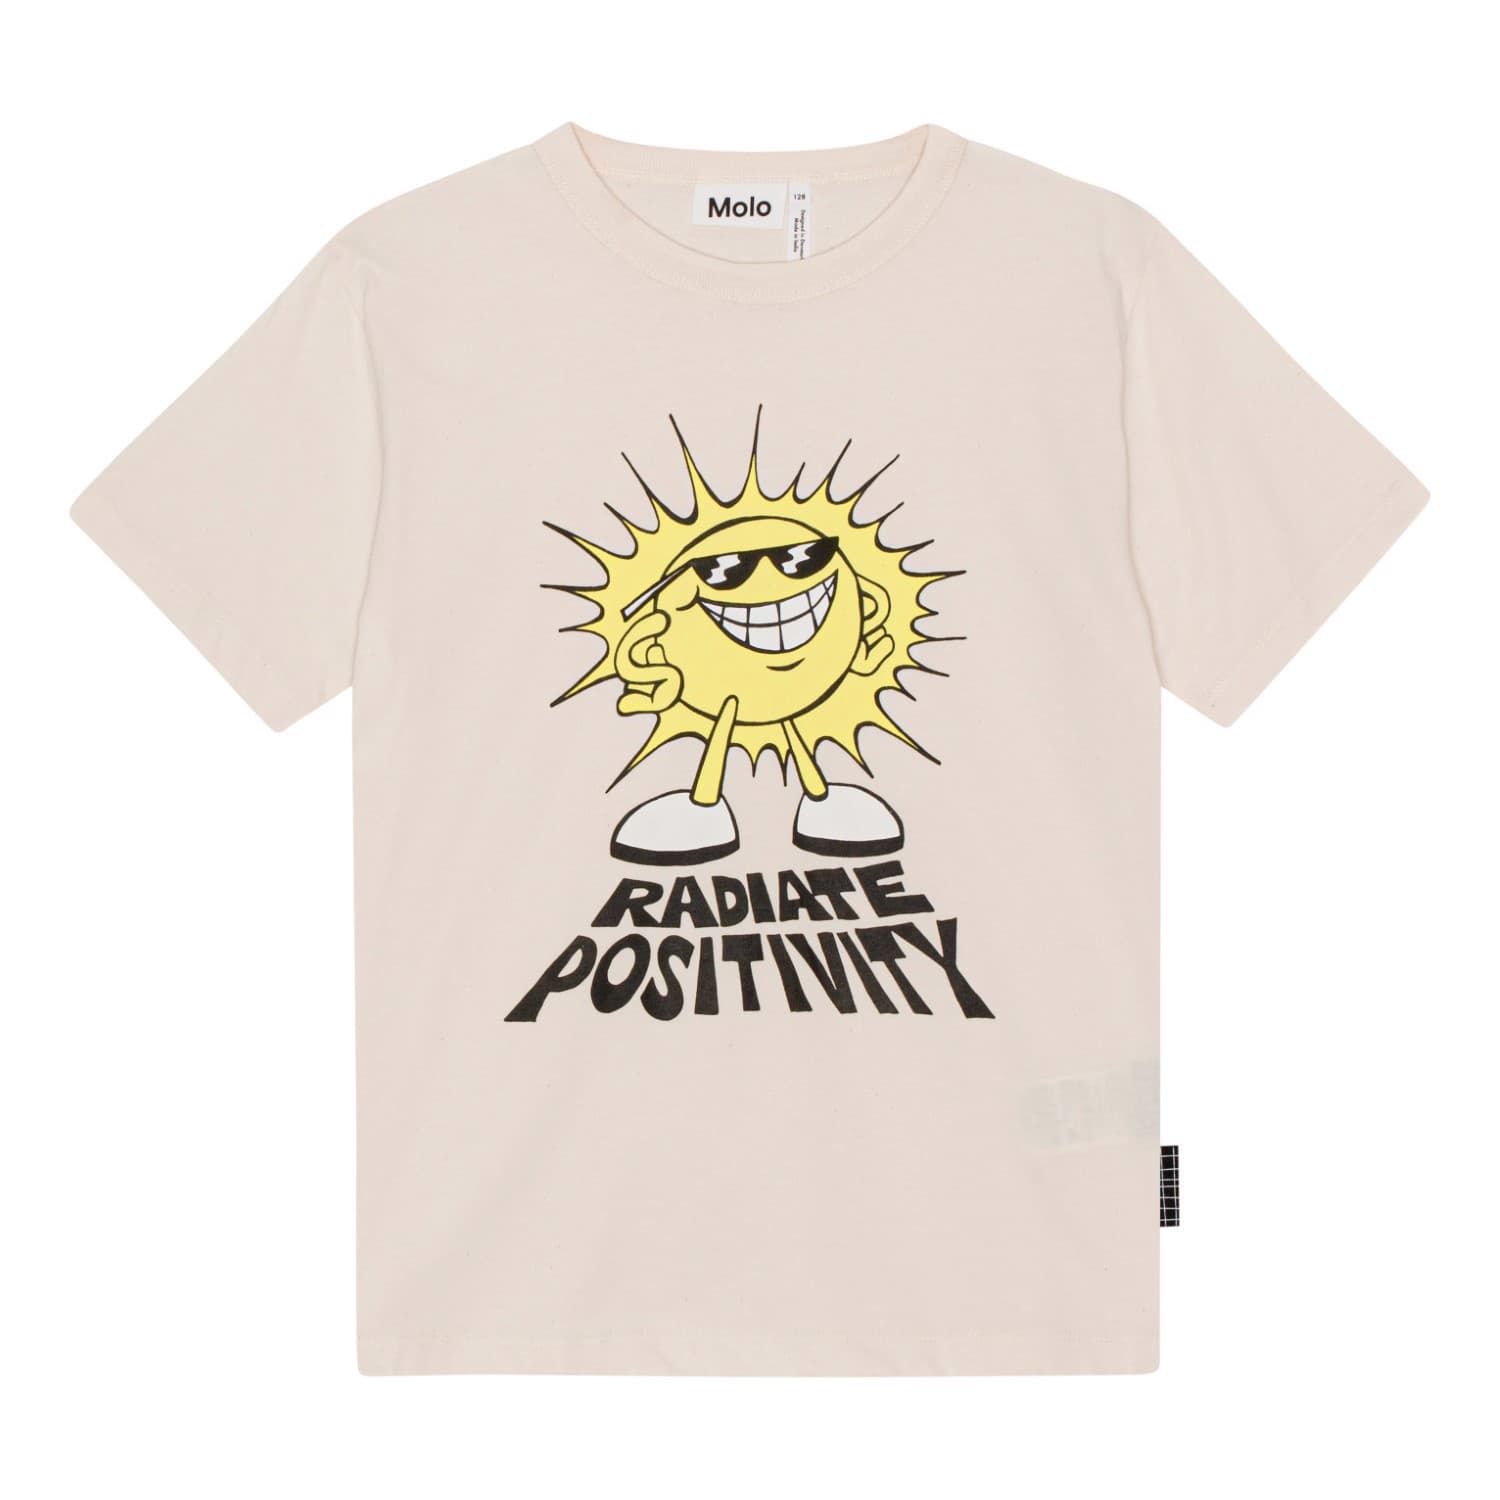 Riley T-shirt (Positive Sun)